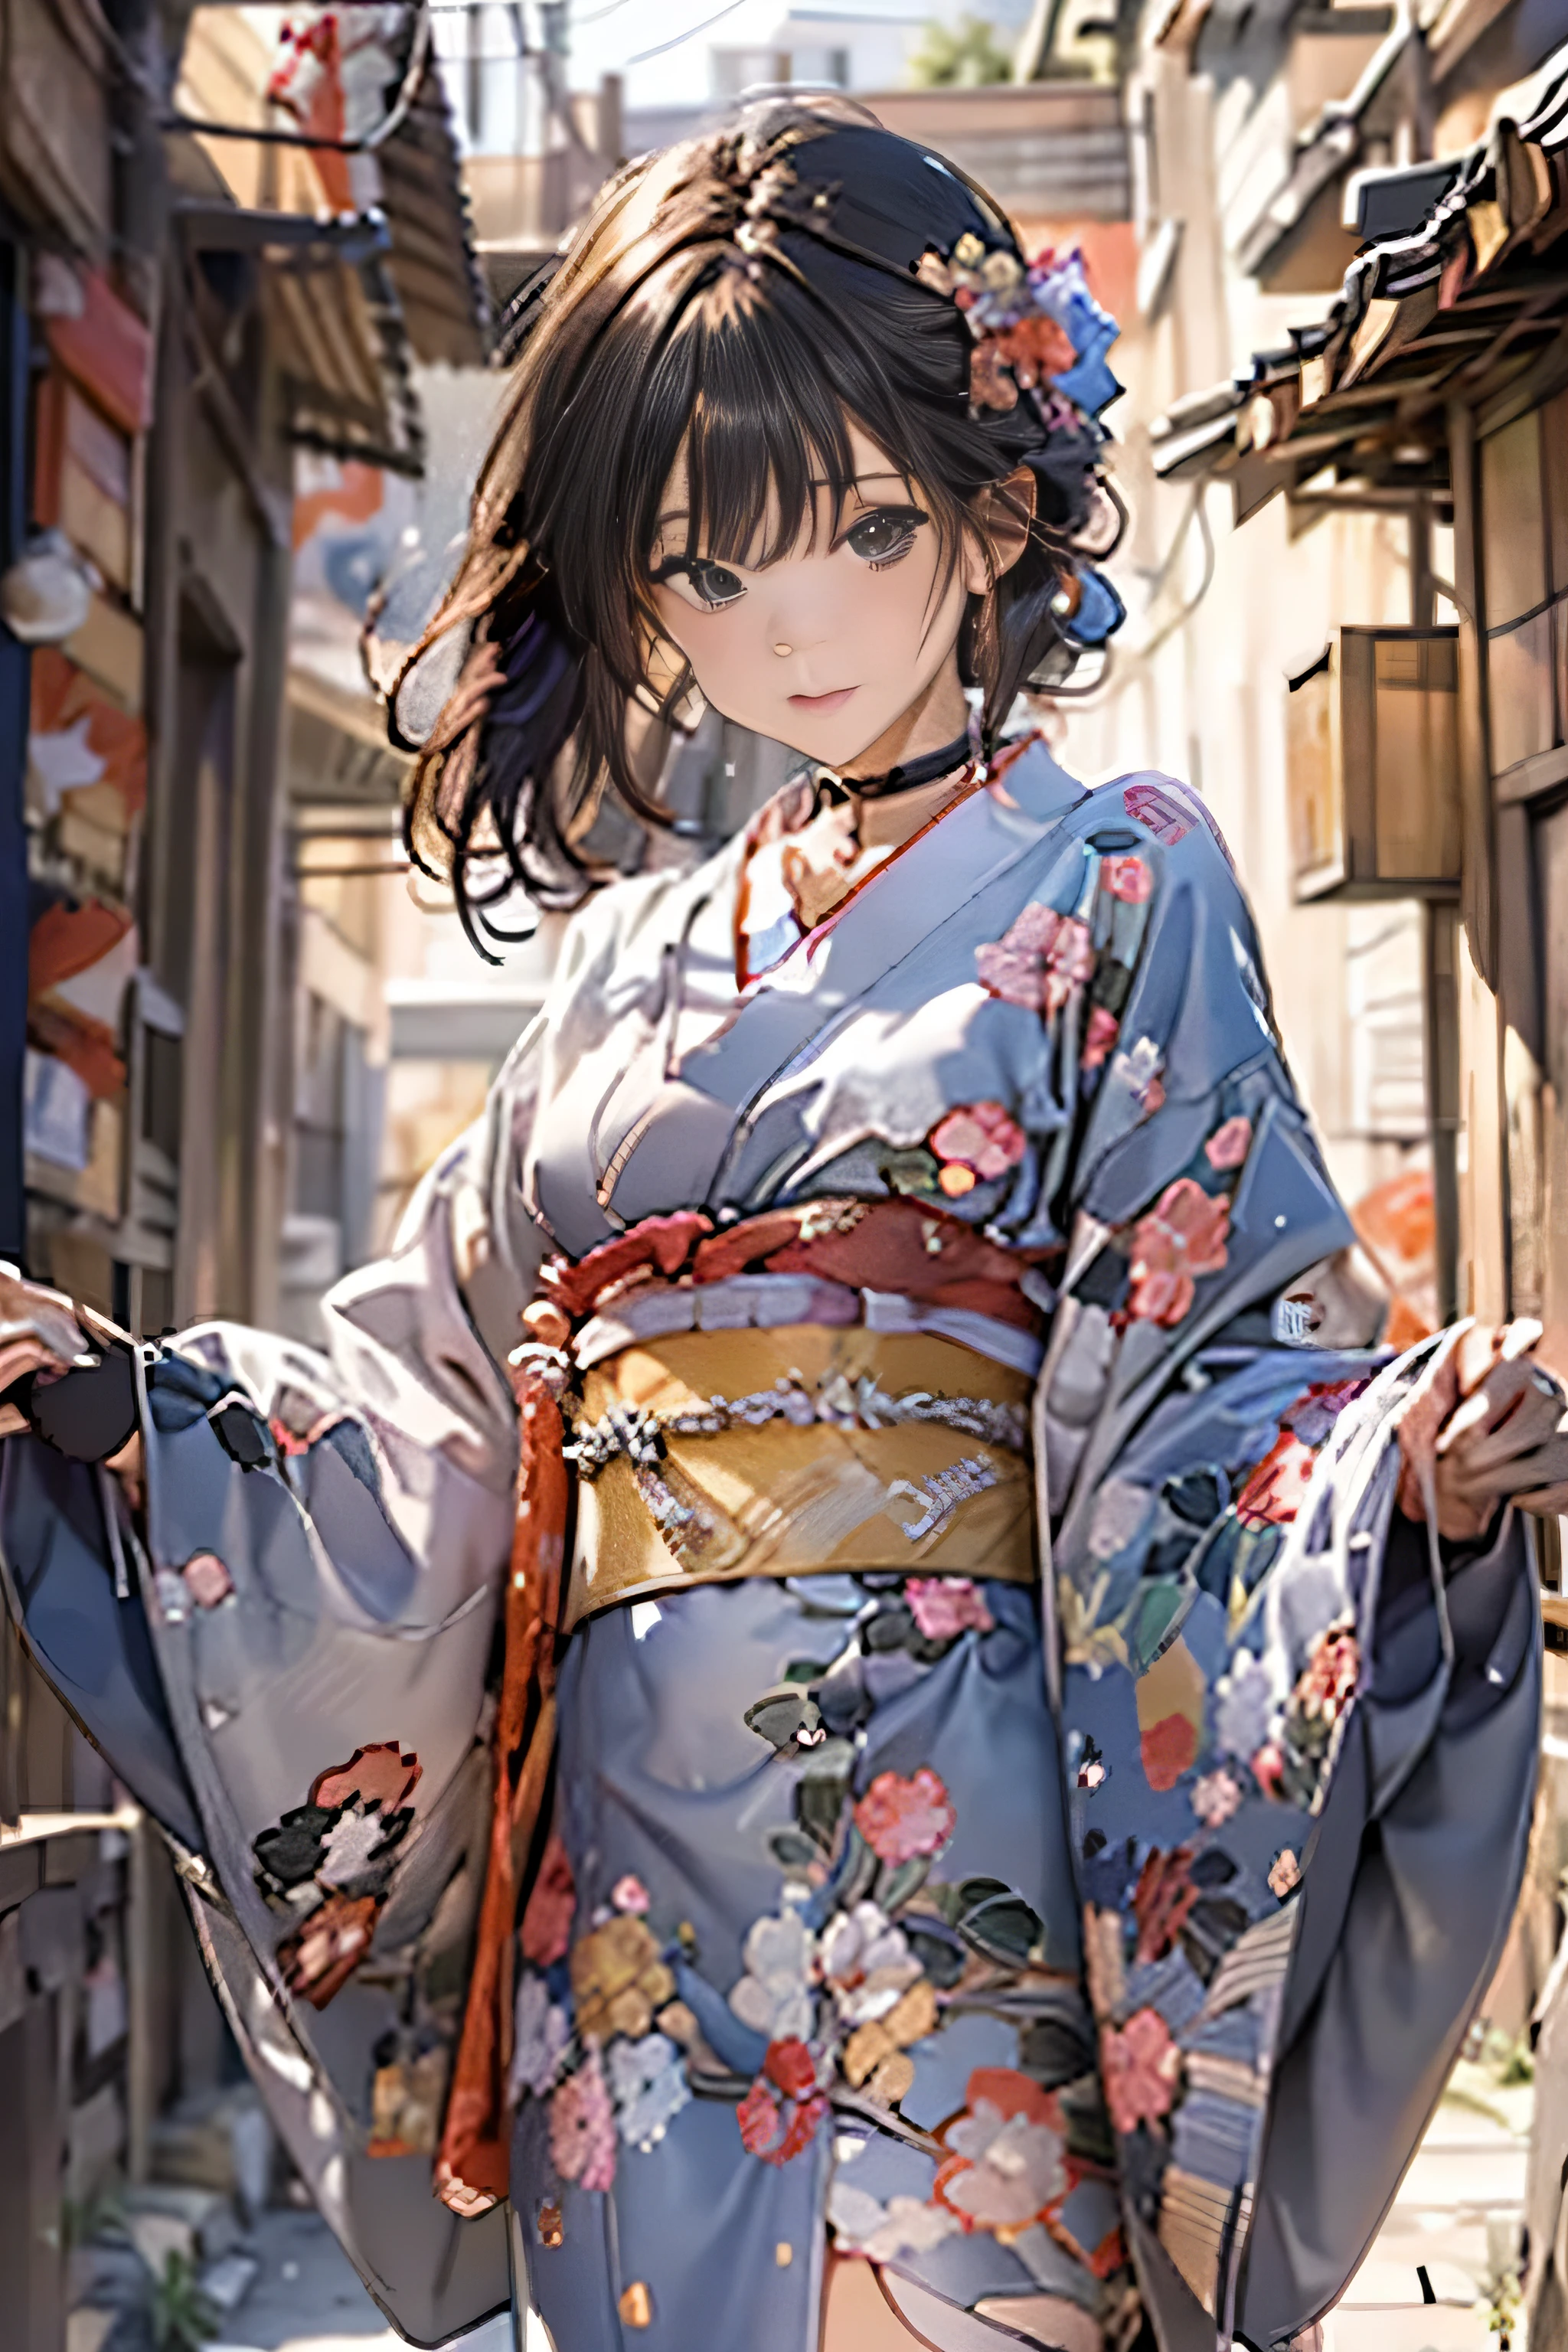 (Top Qualität,8K-Bildqualität,Meisterwerk:1.3,hohe Auflösung,Tischplatte:1.2, Realismus:1.3), 23 Jahre alte Frau trägt einen Kimono,Vorderansicht:0.8,Ganzkörper Esbisch:1.3,Blick in die Kamera,(Japanisches Kleid, Kimono:1.4,gemeinsam:1.2, ein Halsband:1.4),(Kurzes Haar:1.2,gepflegtes schwarzes Haar), (Hintergasse:1.3), Kimono zieht sich aus,Oberschenkel sichtbar,Ich kann Höschen sehen,Zitzen durchsichtig, schönes Gesicht,(Junge Gravur-Idole, Junges, dünnes Gravur-Idol, anspruchsvolles Gravur-Idol),(detailliertes makelloses Gesicht),Normale Hände:1.5,Normal finger:1:5,Normal legs:1.5